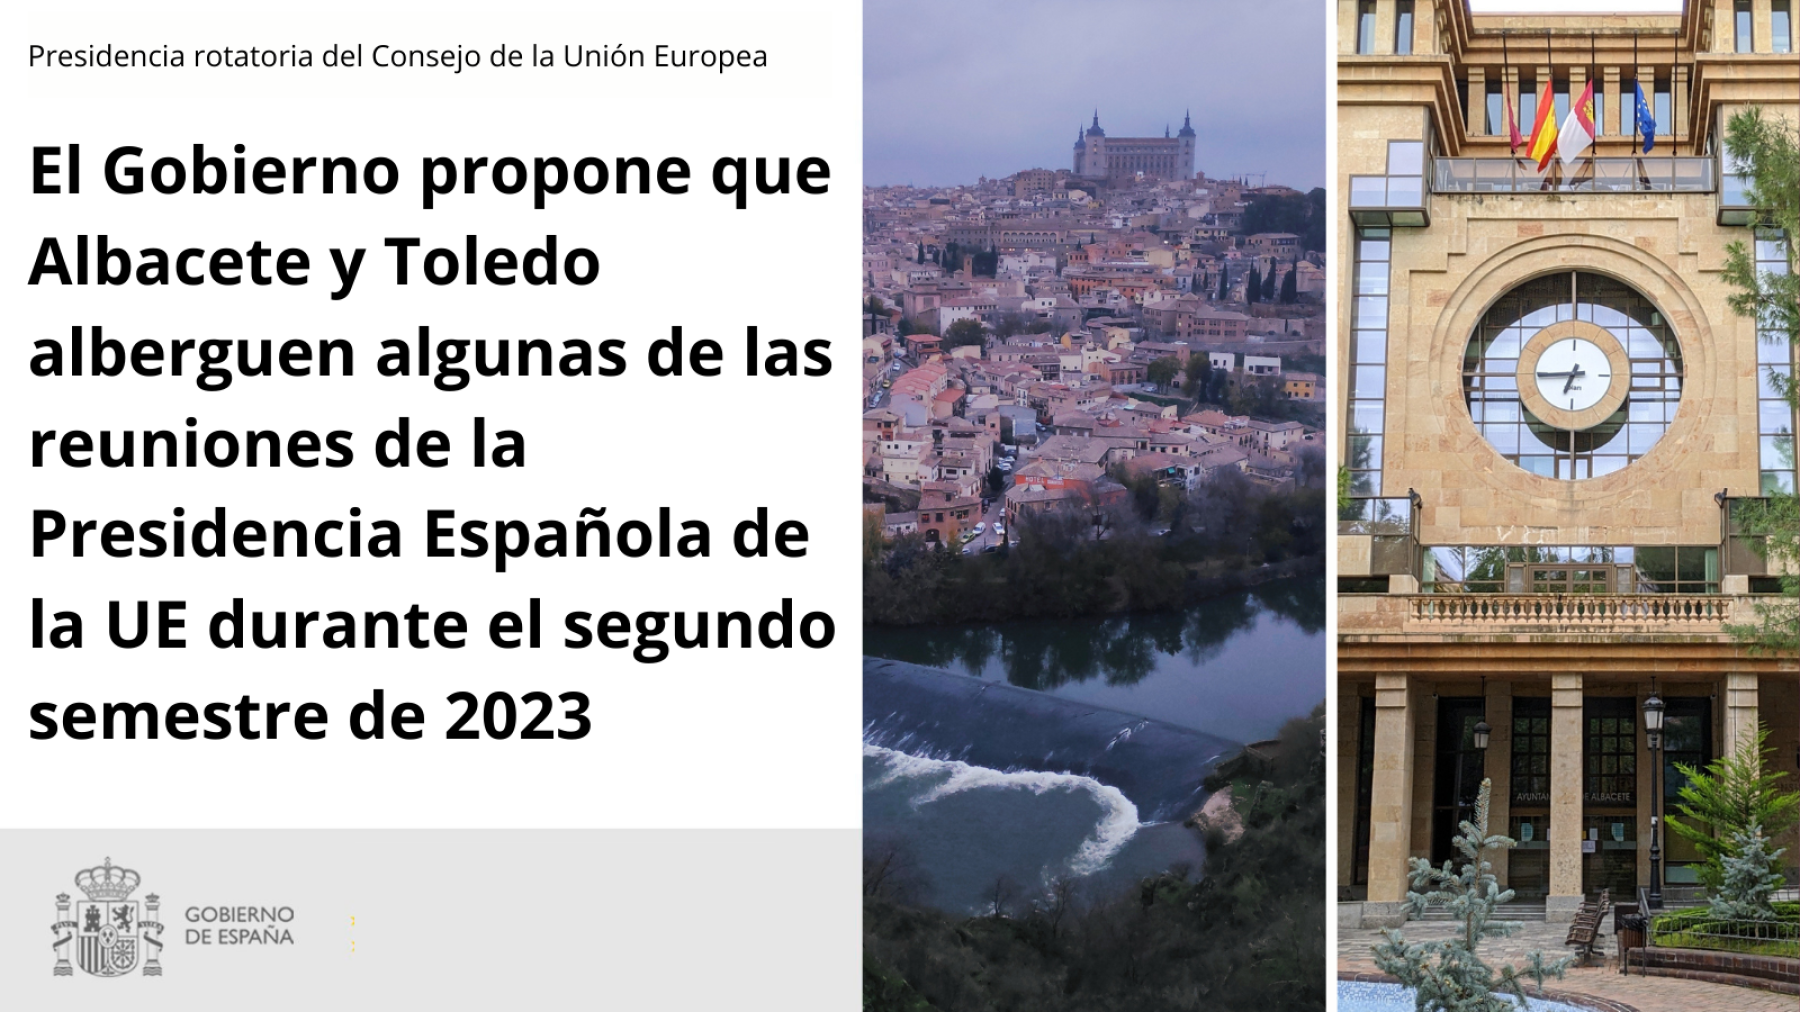 El Gobierno propone que Albacete y Toledo alberguen algunas de las reuniones de la Presidencia Española de la UE durante el segundo semestre de 2023